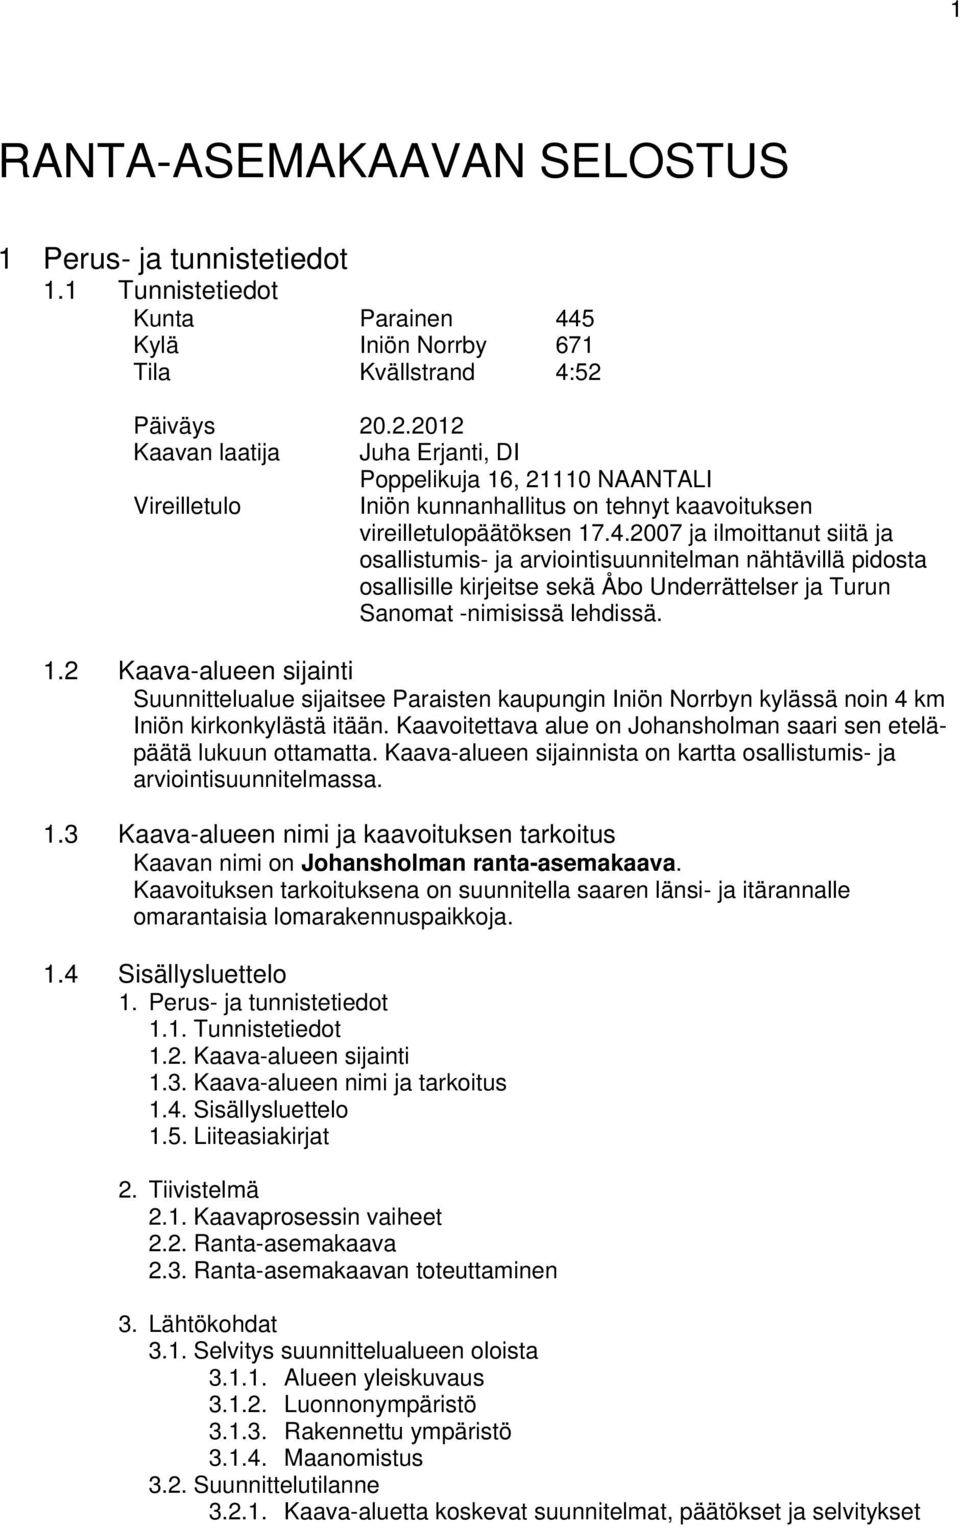 2007 ja ilmoittanut siitä ja osallistumis- ja arviointisuunnitelman nähtävillä pidosta osallisille kirjeitse sekä Åbo Underrättelser ja Turun Sanomat -nimisissä lehdissä. 1.